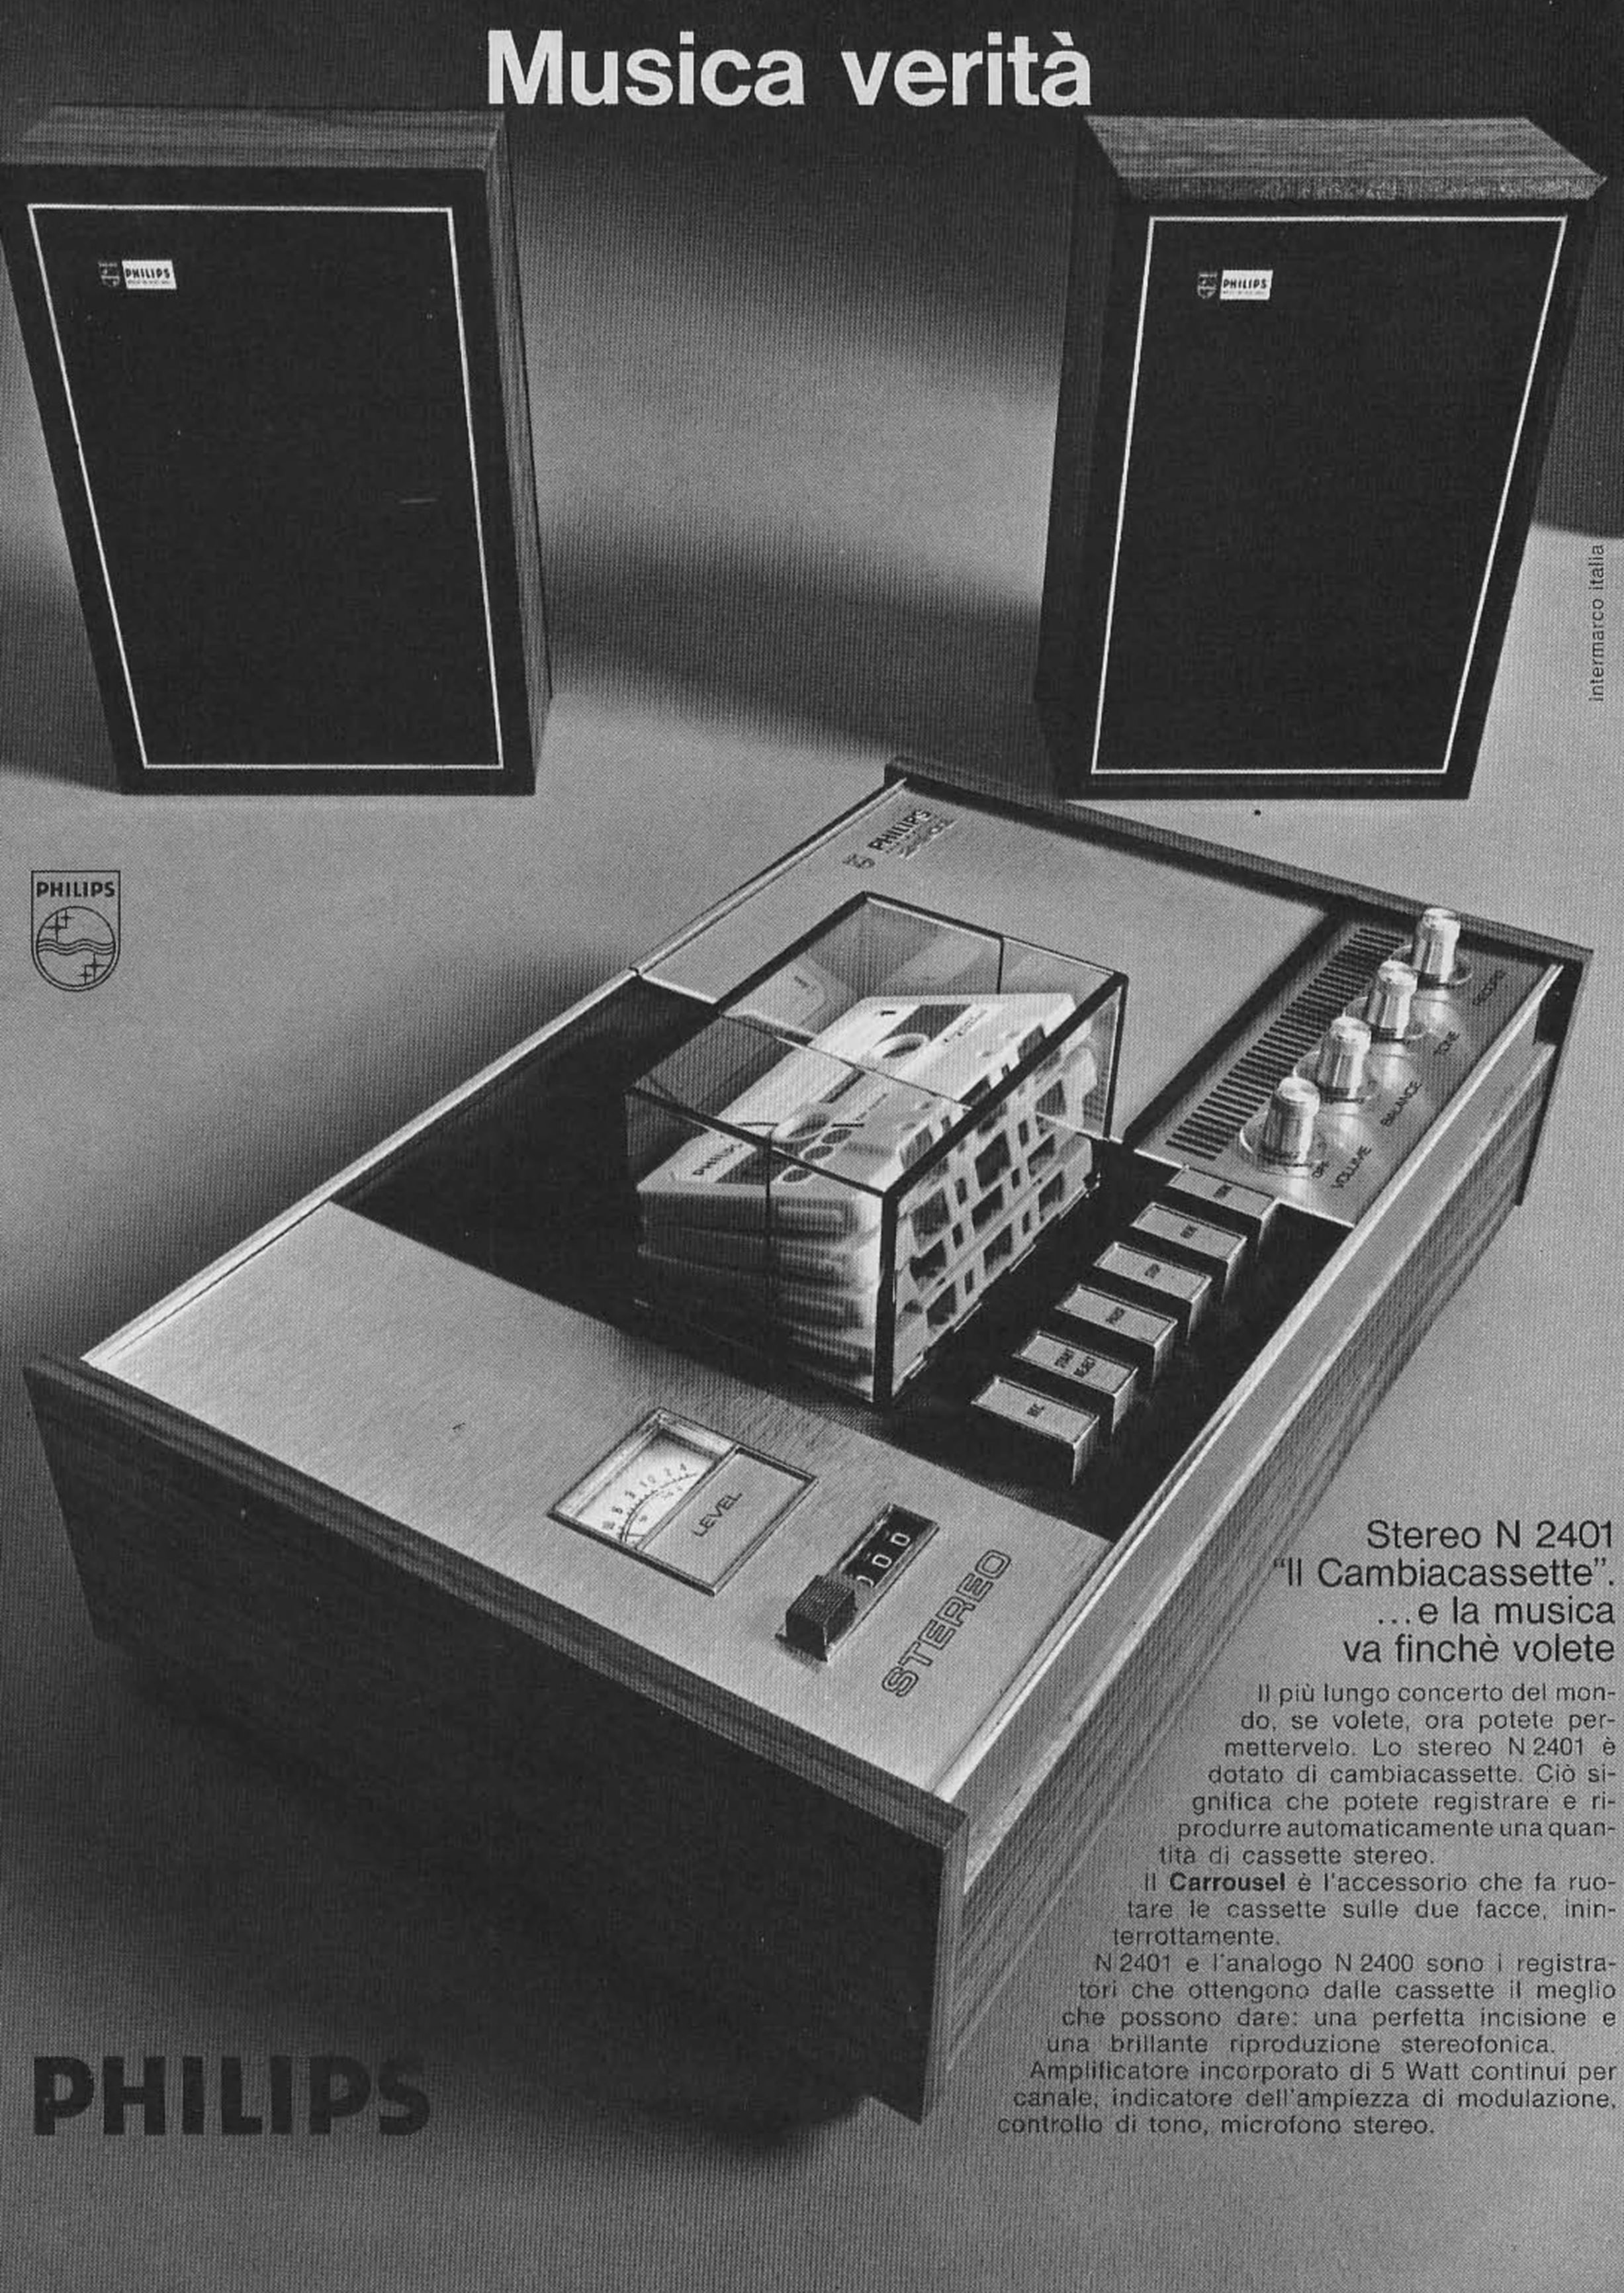 Philips 1972 252.jpg